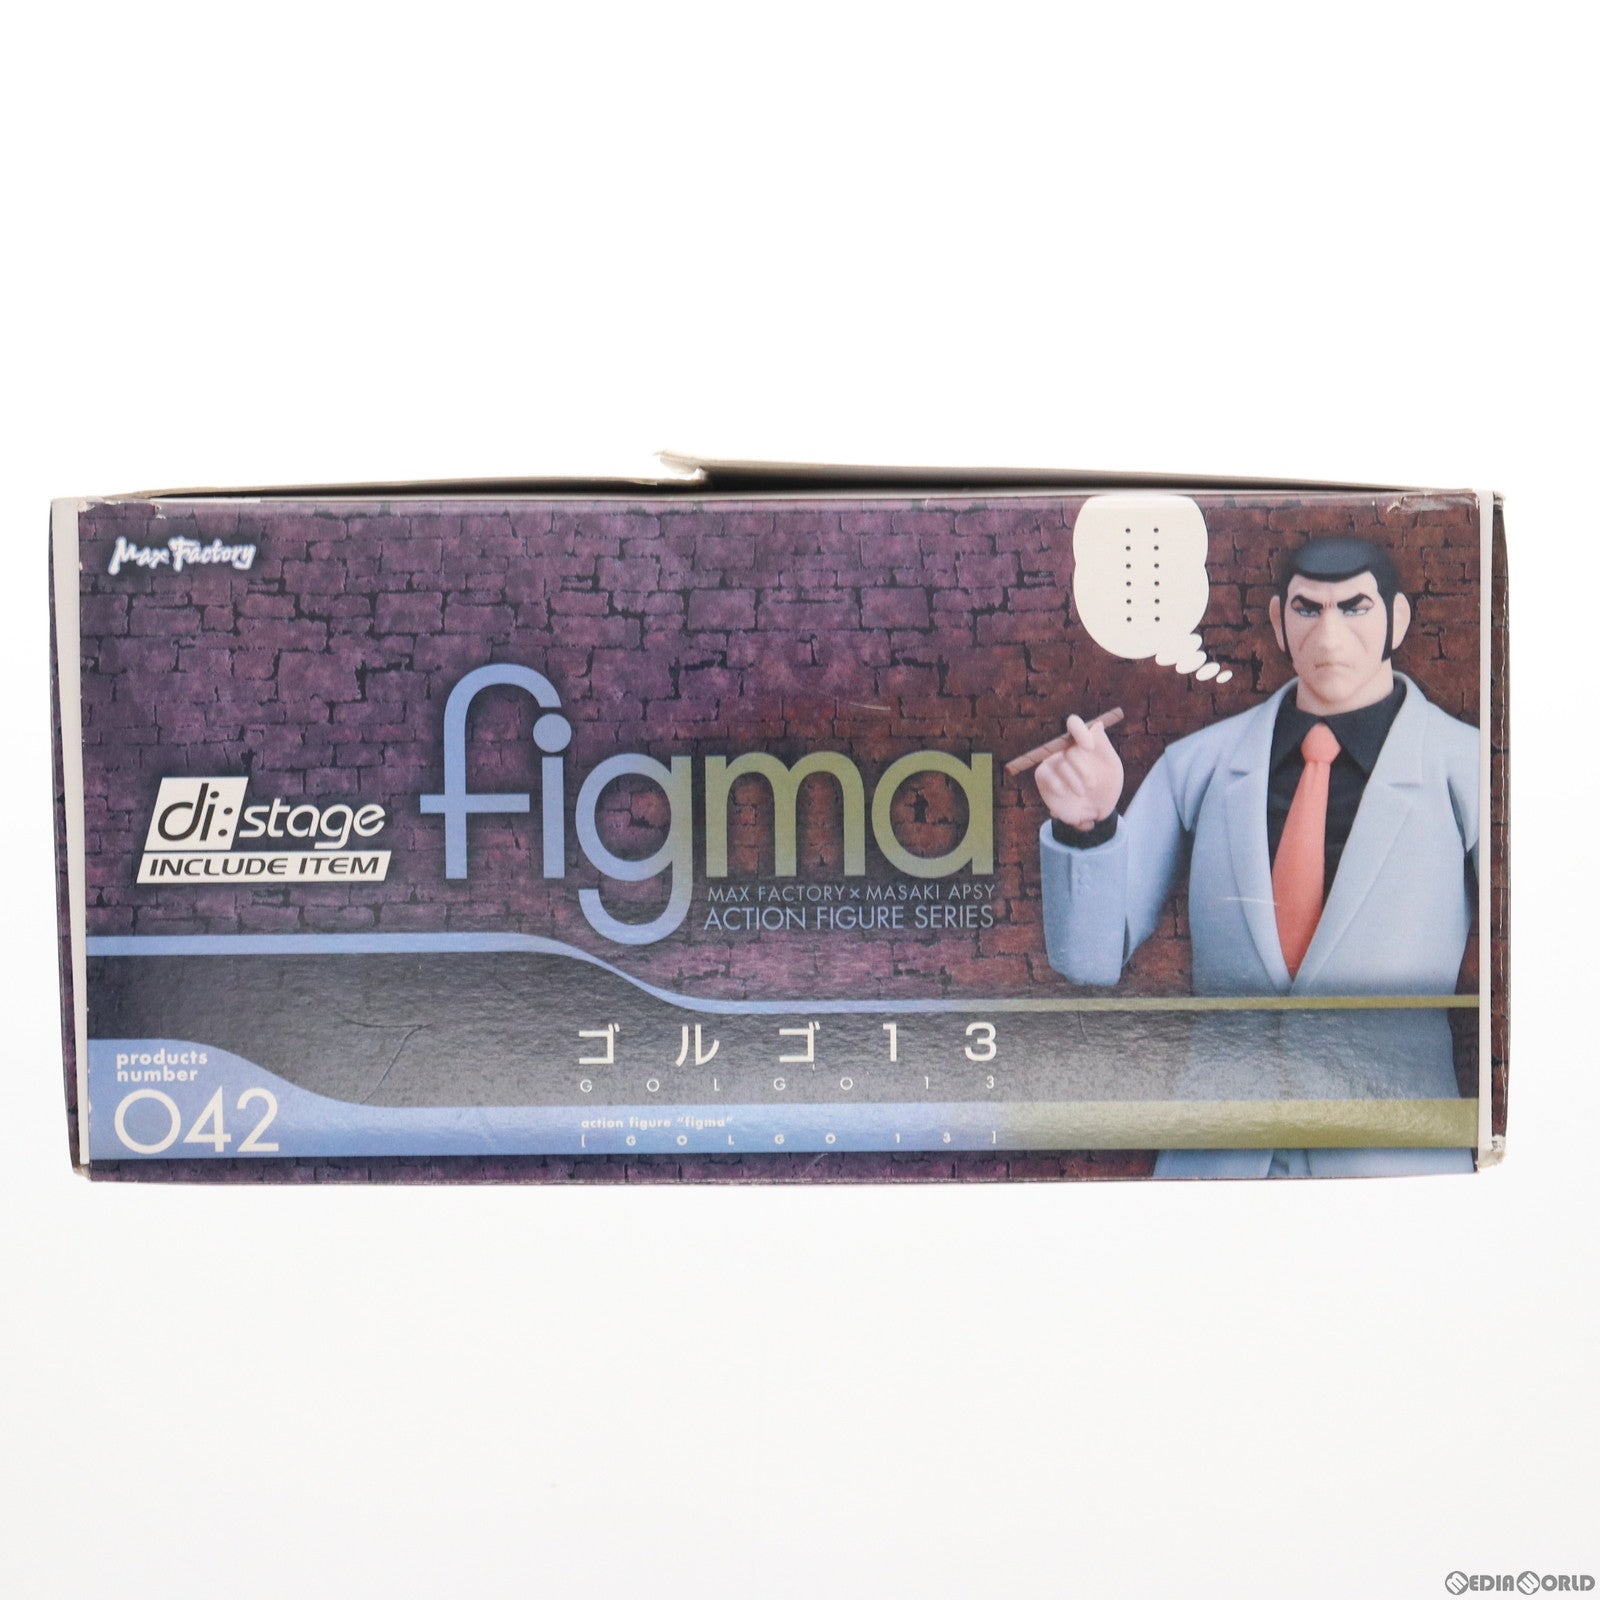 【中古即納】[FIG]figma(フィグマ) 042 ゴルゴ13(ゴルゴサーティン) 完成品 可動フィギュア マックスファクトリー(20090831)